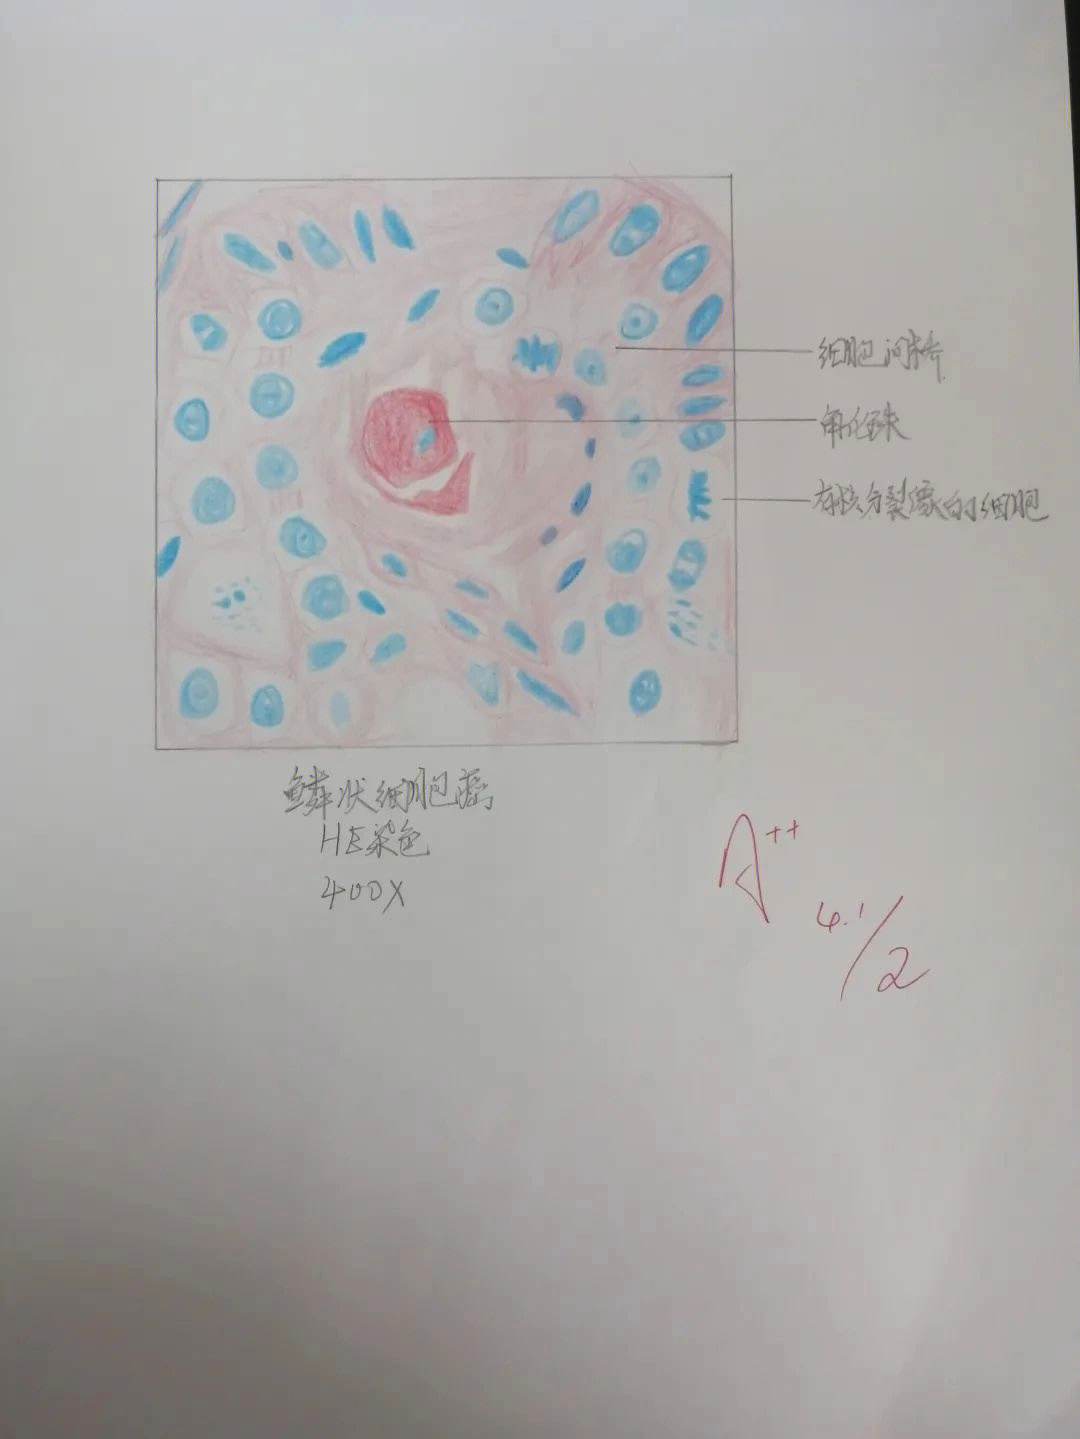 纤维肉瘤红蓝铅笔图图片